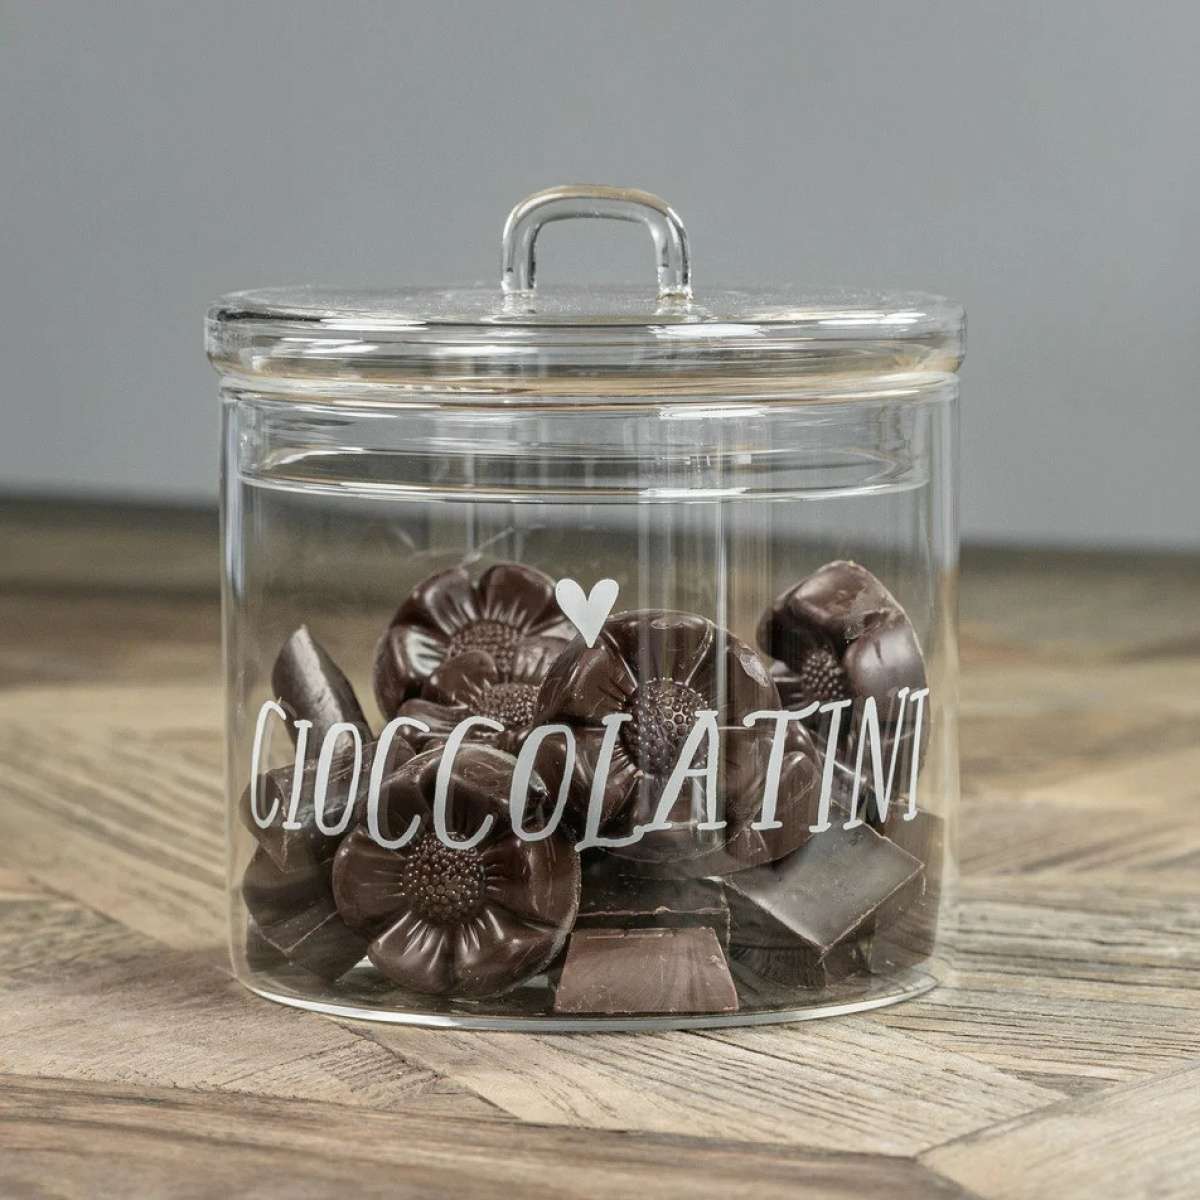 Immagine del prodotto Barattolo in Vetro Borosilicato Cioccolatini Cuore 12 ø | Simple Day